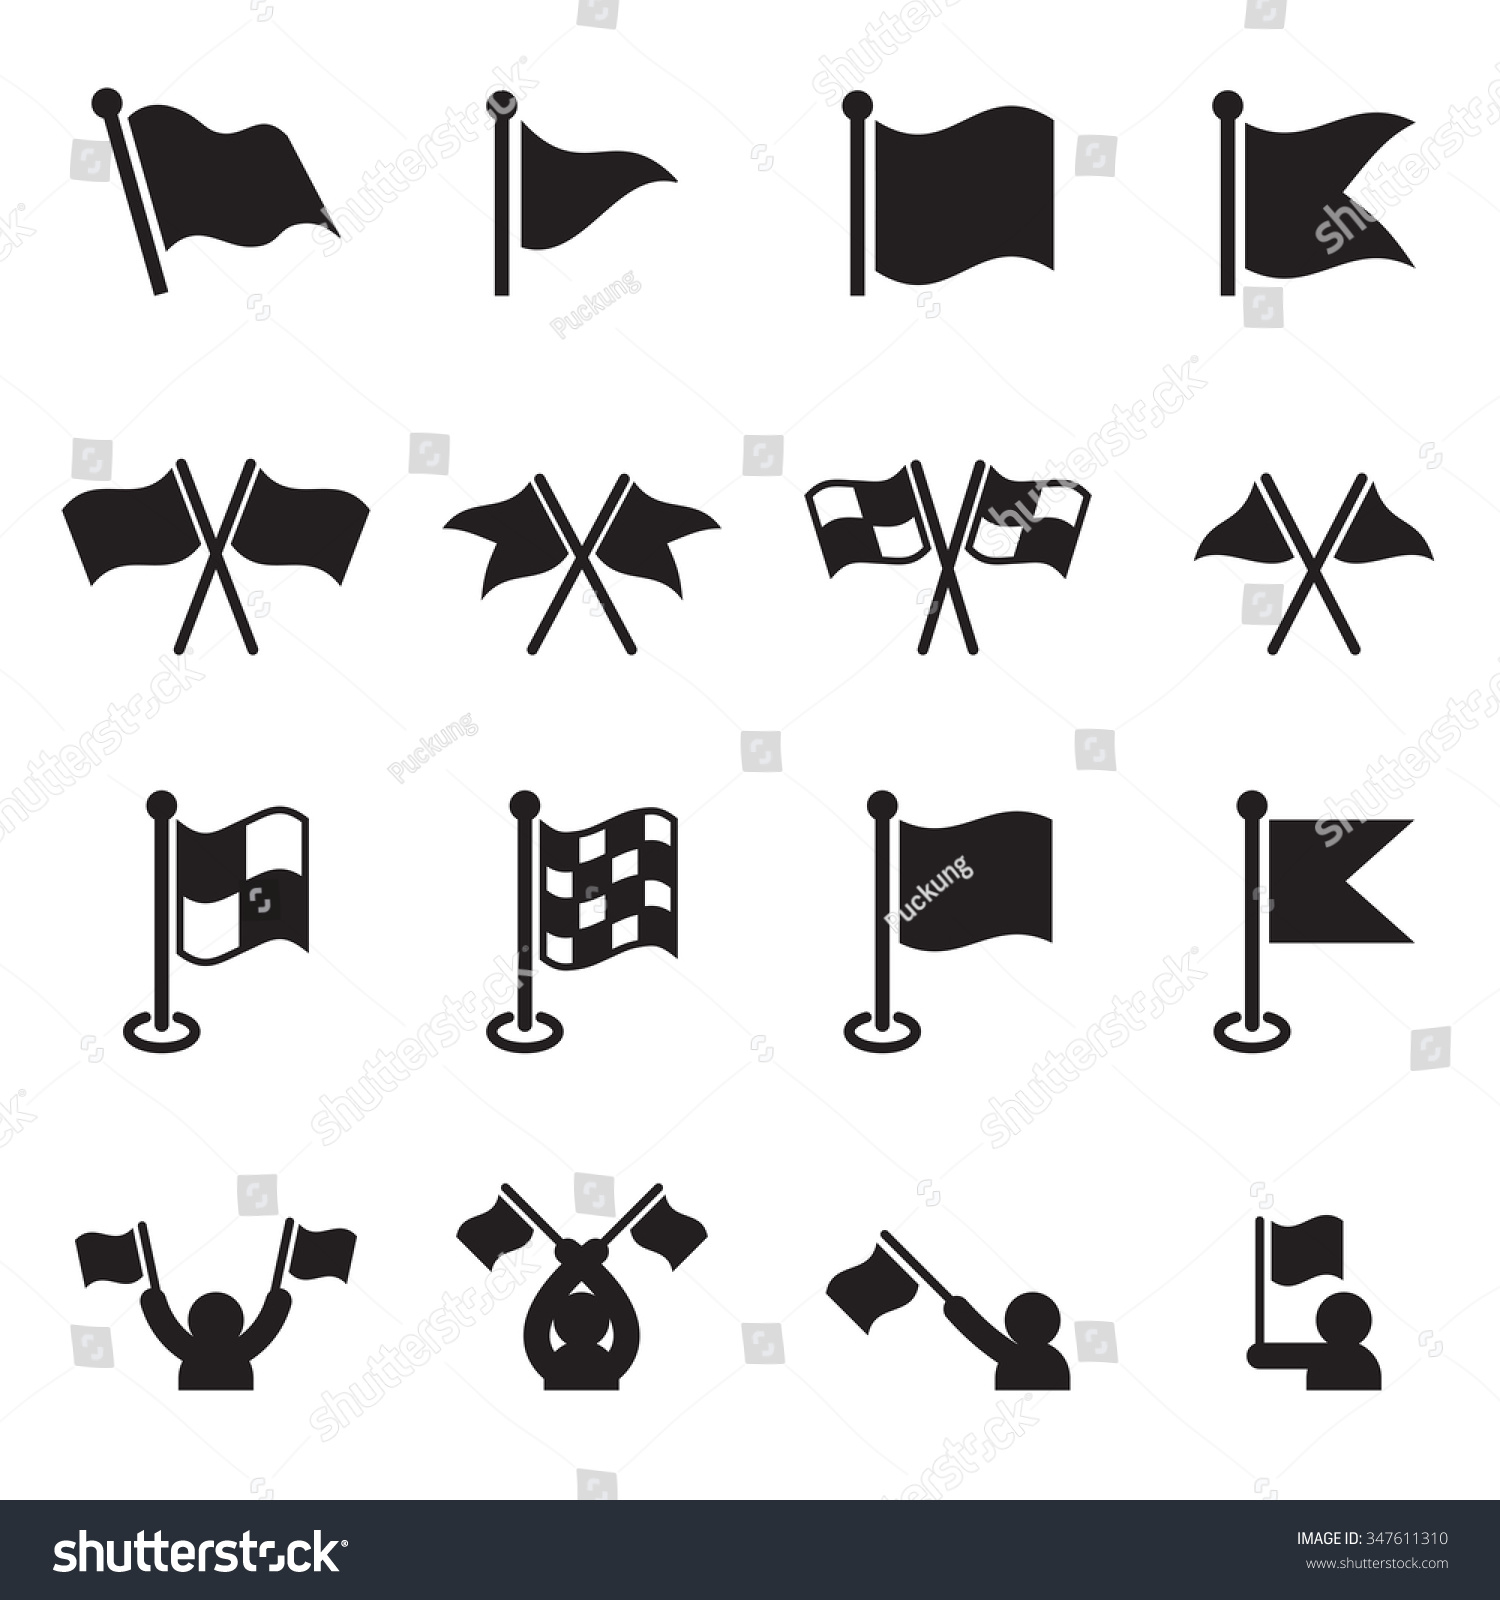 Flag Icons Set Stock Vector 347611310 : Shutterstock